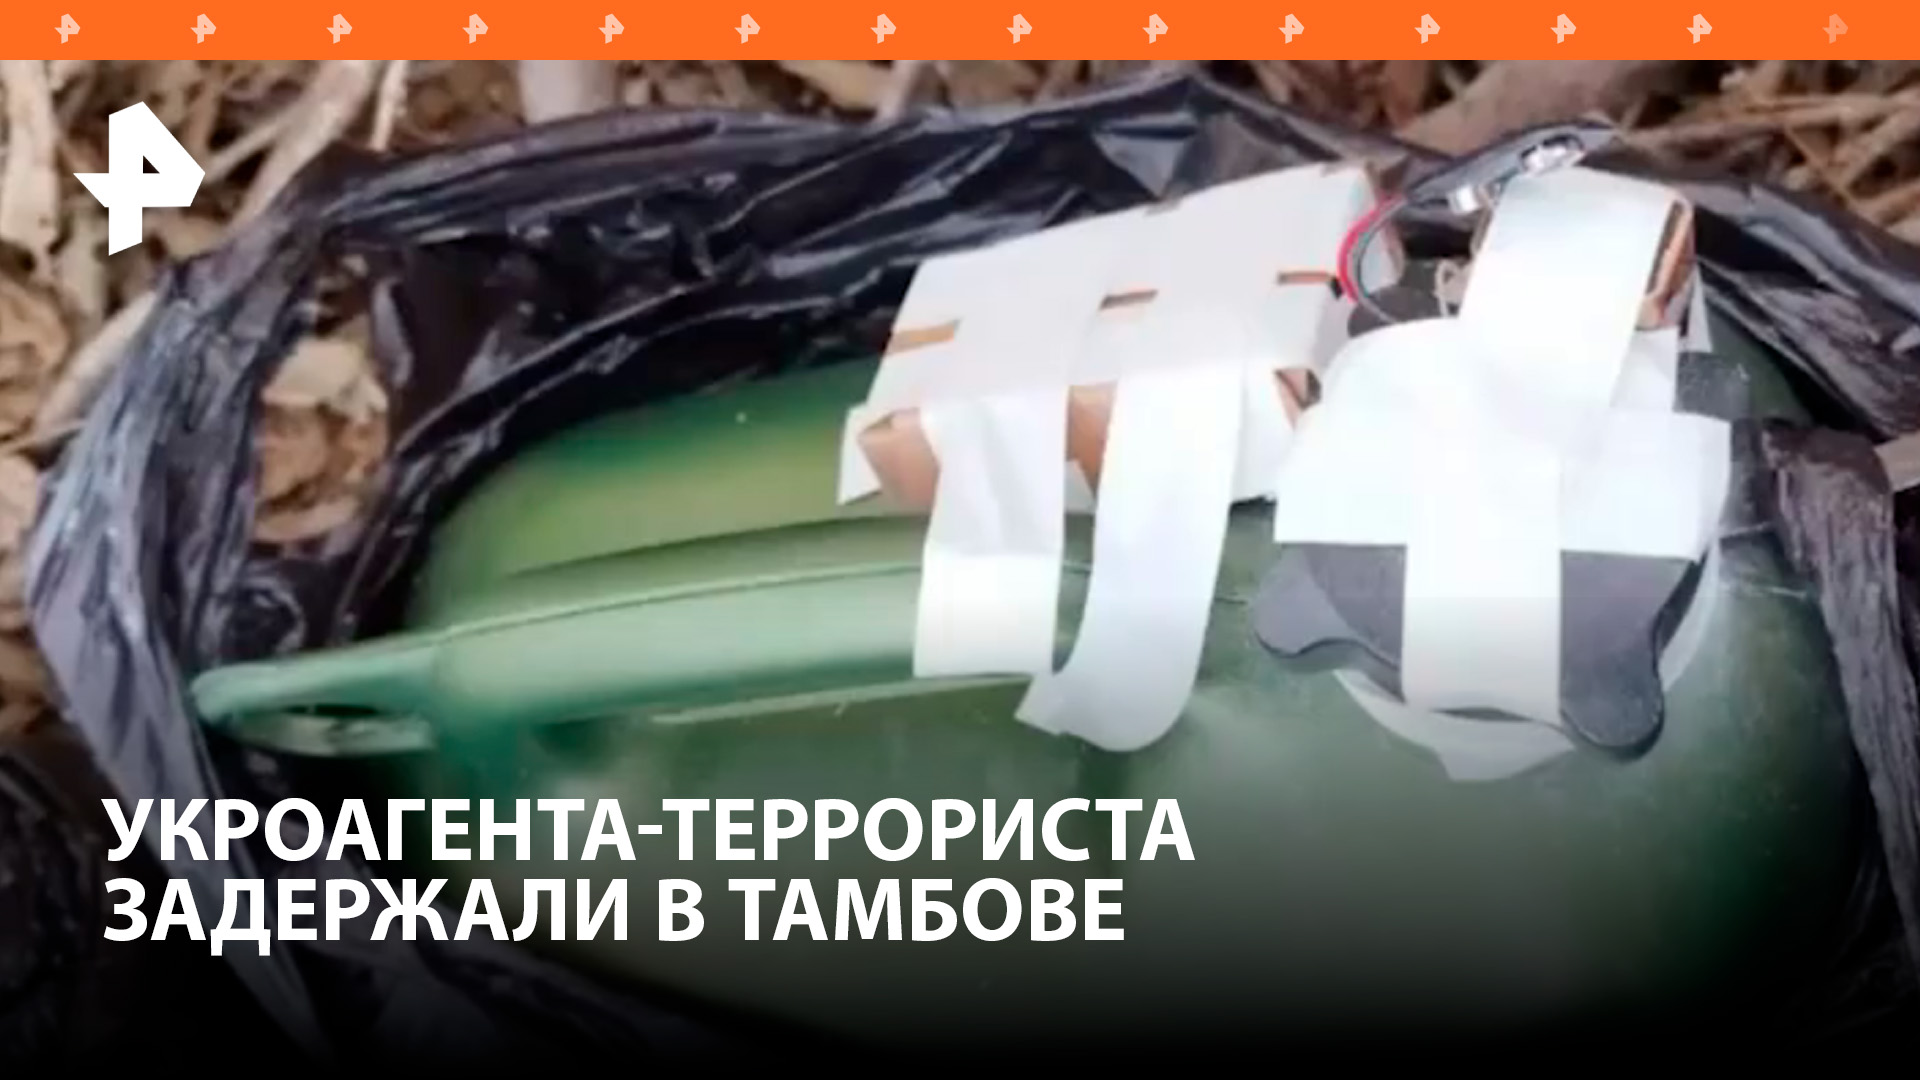 Украинский агент спрятал взрывные устройства в строительном мусоре: его задержали в Тамбове